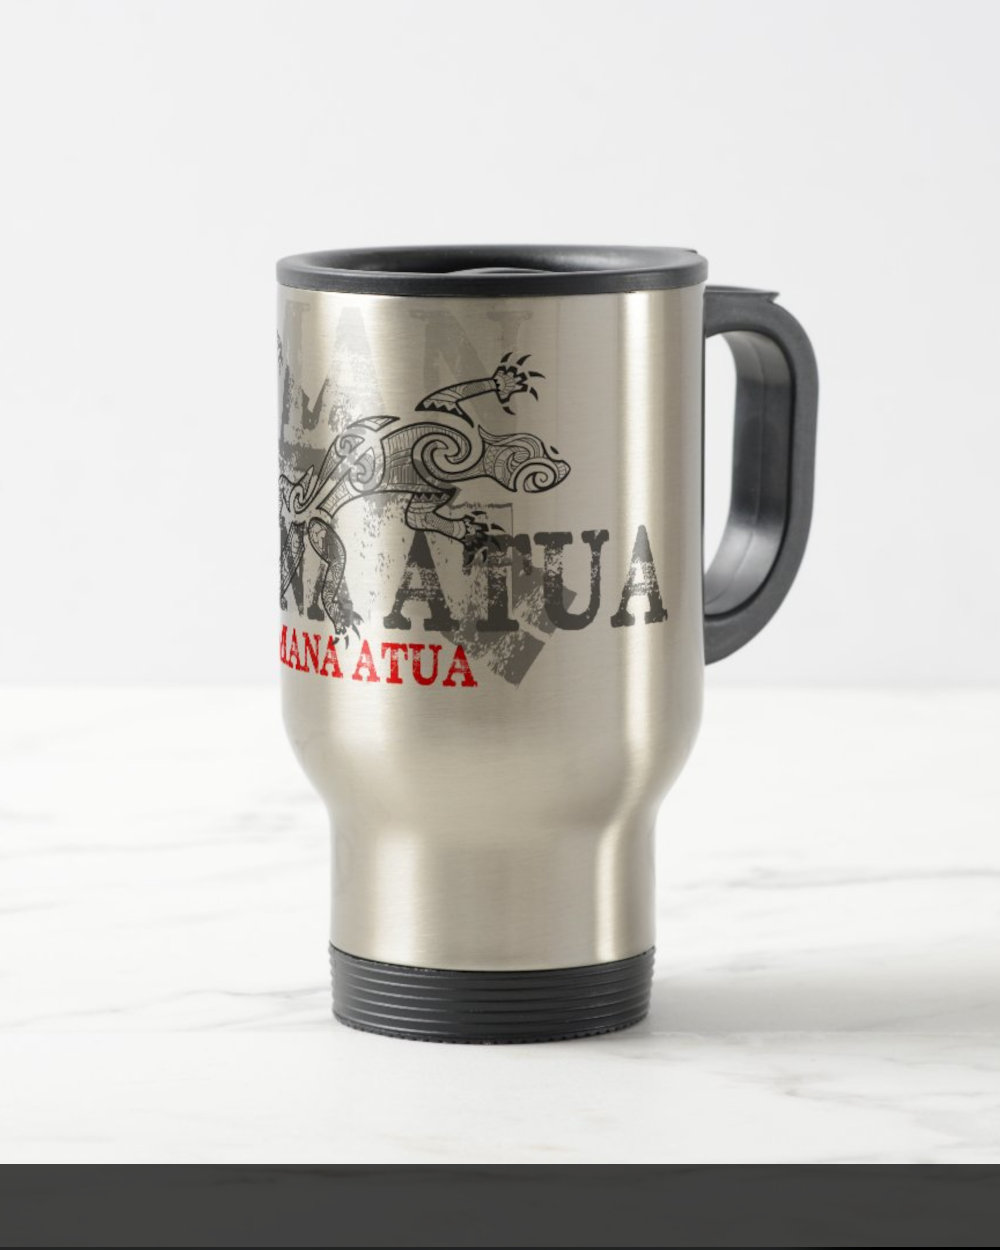 Mana Atua travel coffee tea mug with tribal maori lizard tattoo